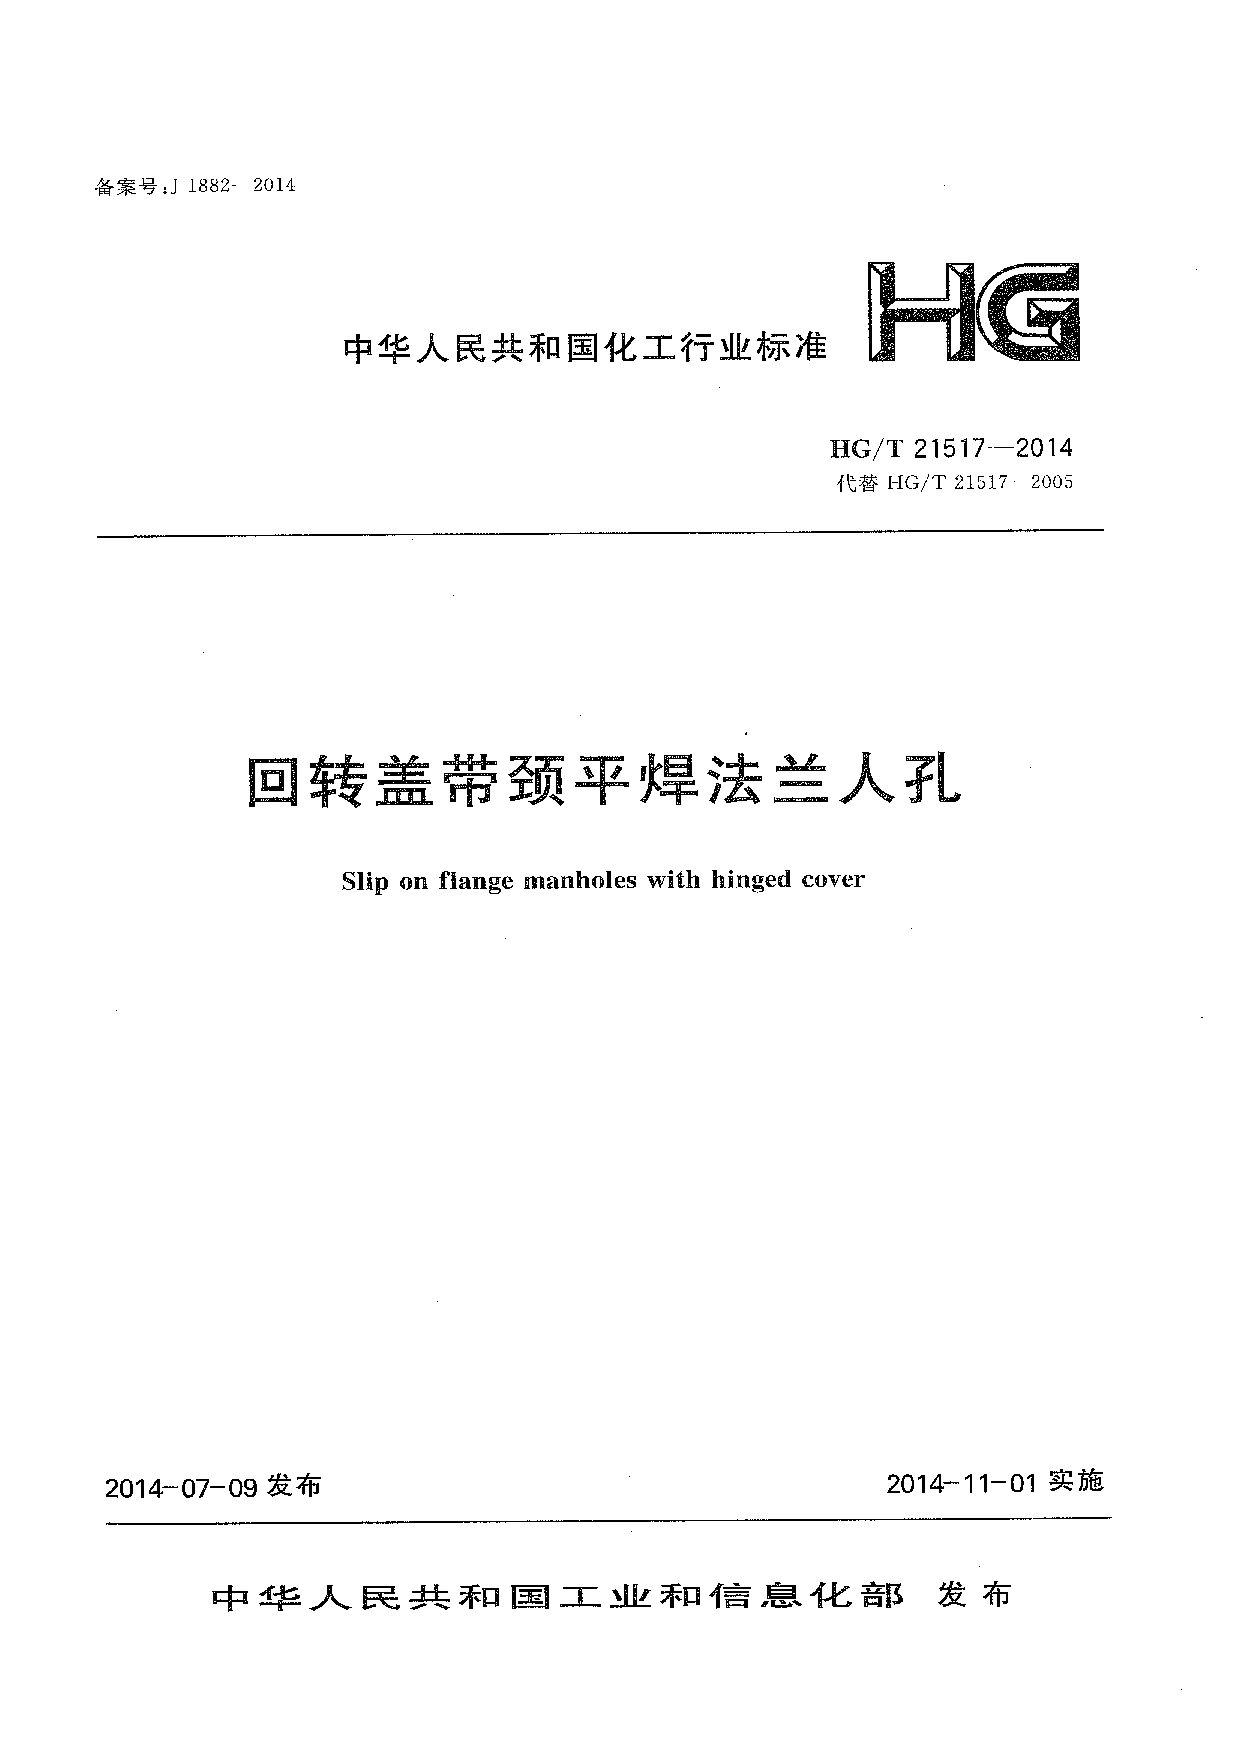 HG/T 21517-2014封面图